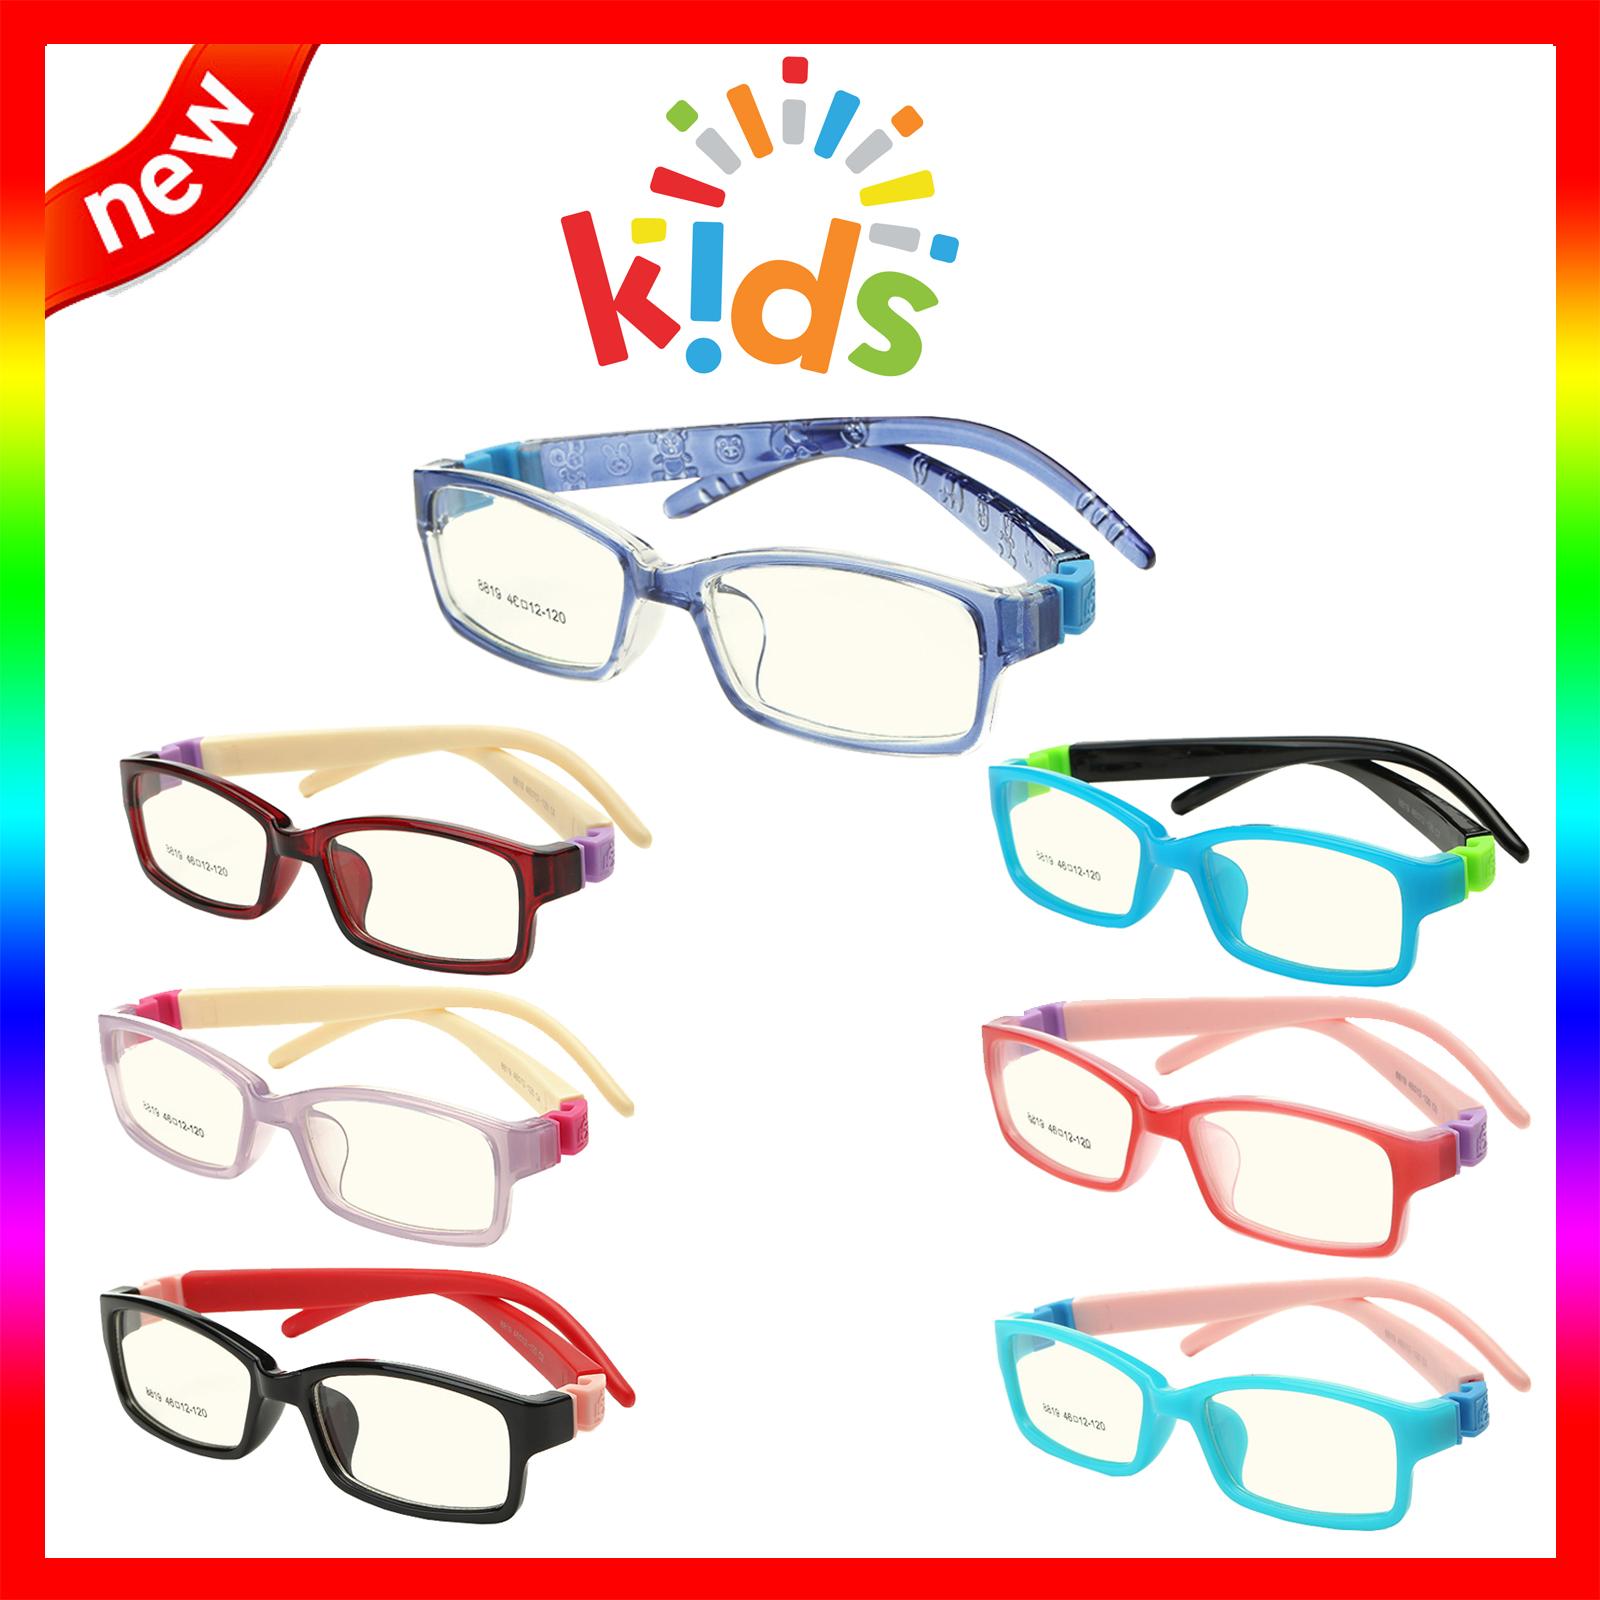 แว่นตาเกาหลีเด็ก Fashion Korea Children แว่นตาเด็ก รุ่น 8819 กรอบแว่นตาเด็ก Rectangle ทรงสี่เหลี่ยมผืนผ้า Eyeglass baby frame ( สำหรับตัดเลนส์ ) วัสดุ PC เบา ขาข้อต่อ Kid leg joints Plastic Grade A material Eyewear Top Glasses